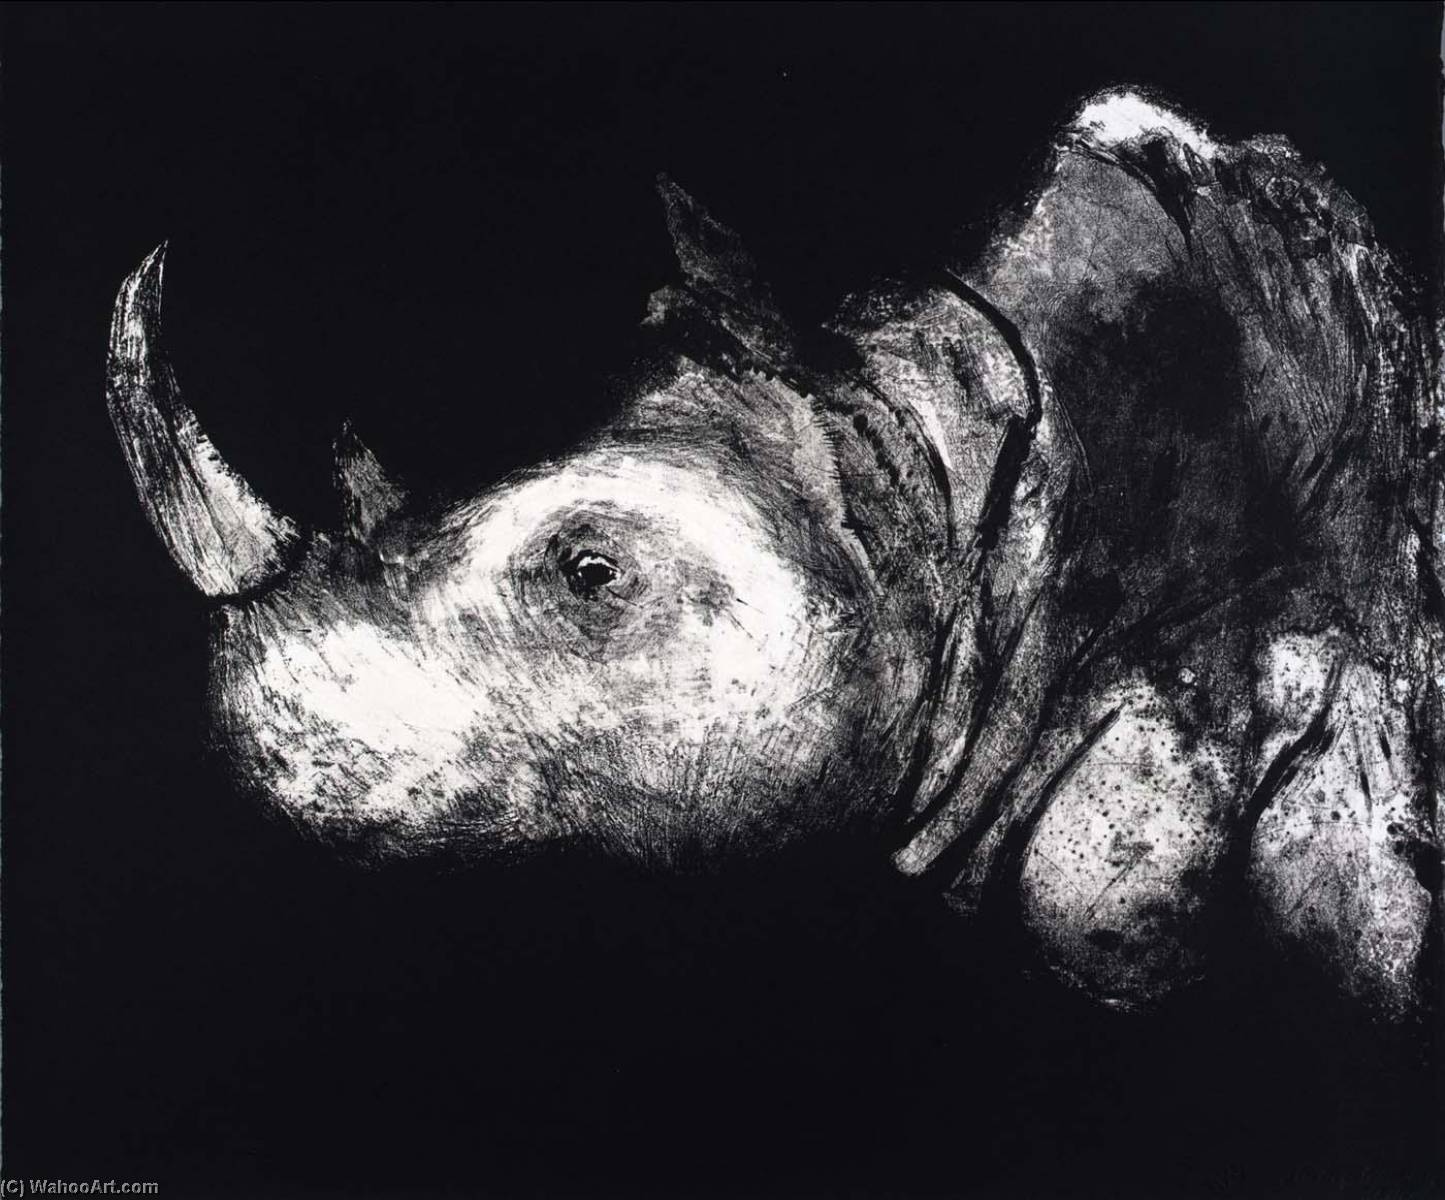 Wikioo.org - Bách khoa toàn thư về mỹ thuật - Vẽ tranh, Tác phẩm nghệ thuật Aubrey Schwartz - (A Bestiary, portfolio) Rhinocerus